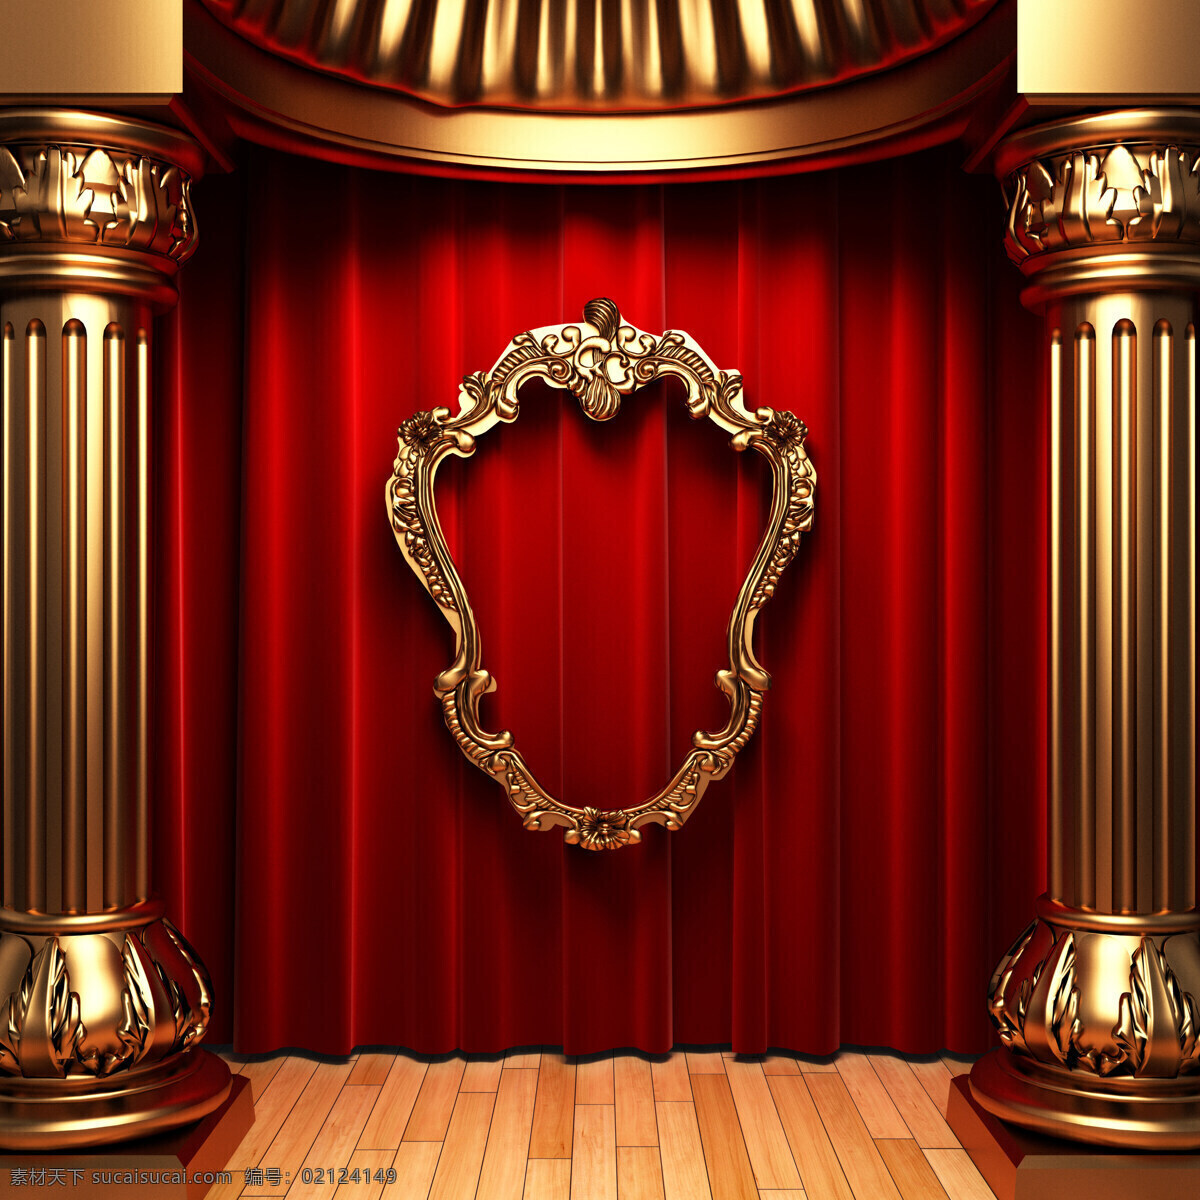 高清 舞台 背景 四 高清图片 舞台背景 背景图片 罗马柱 相框 地板 窗帘 展板 红色